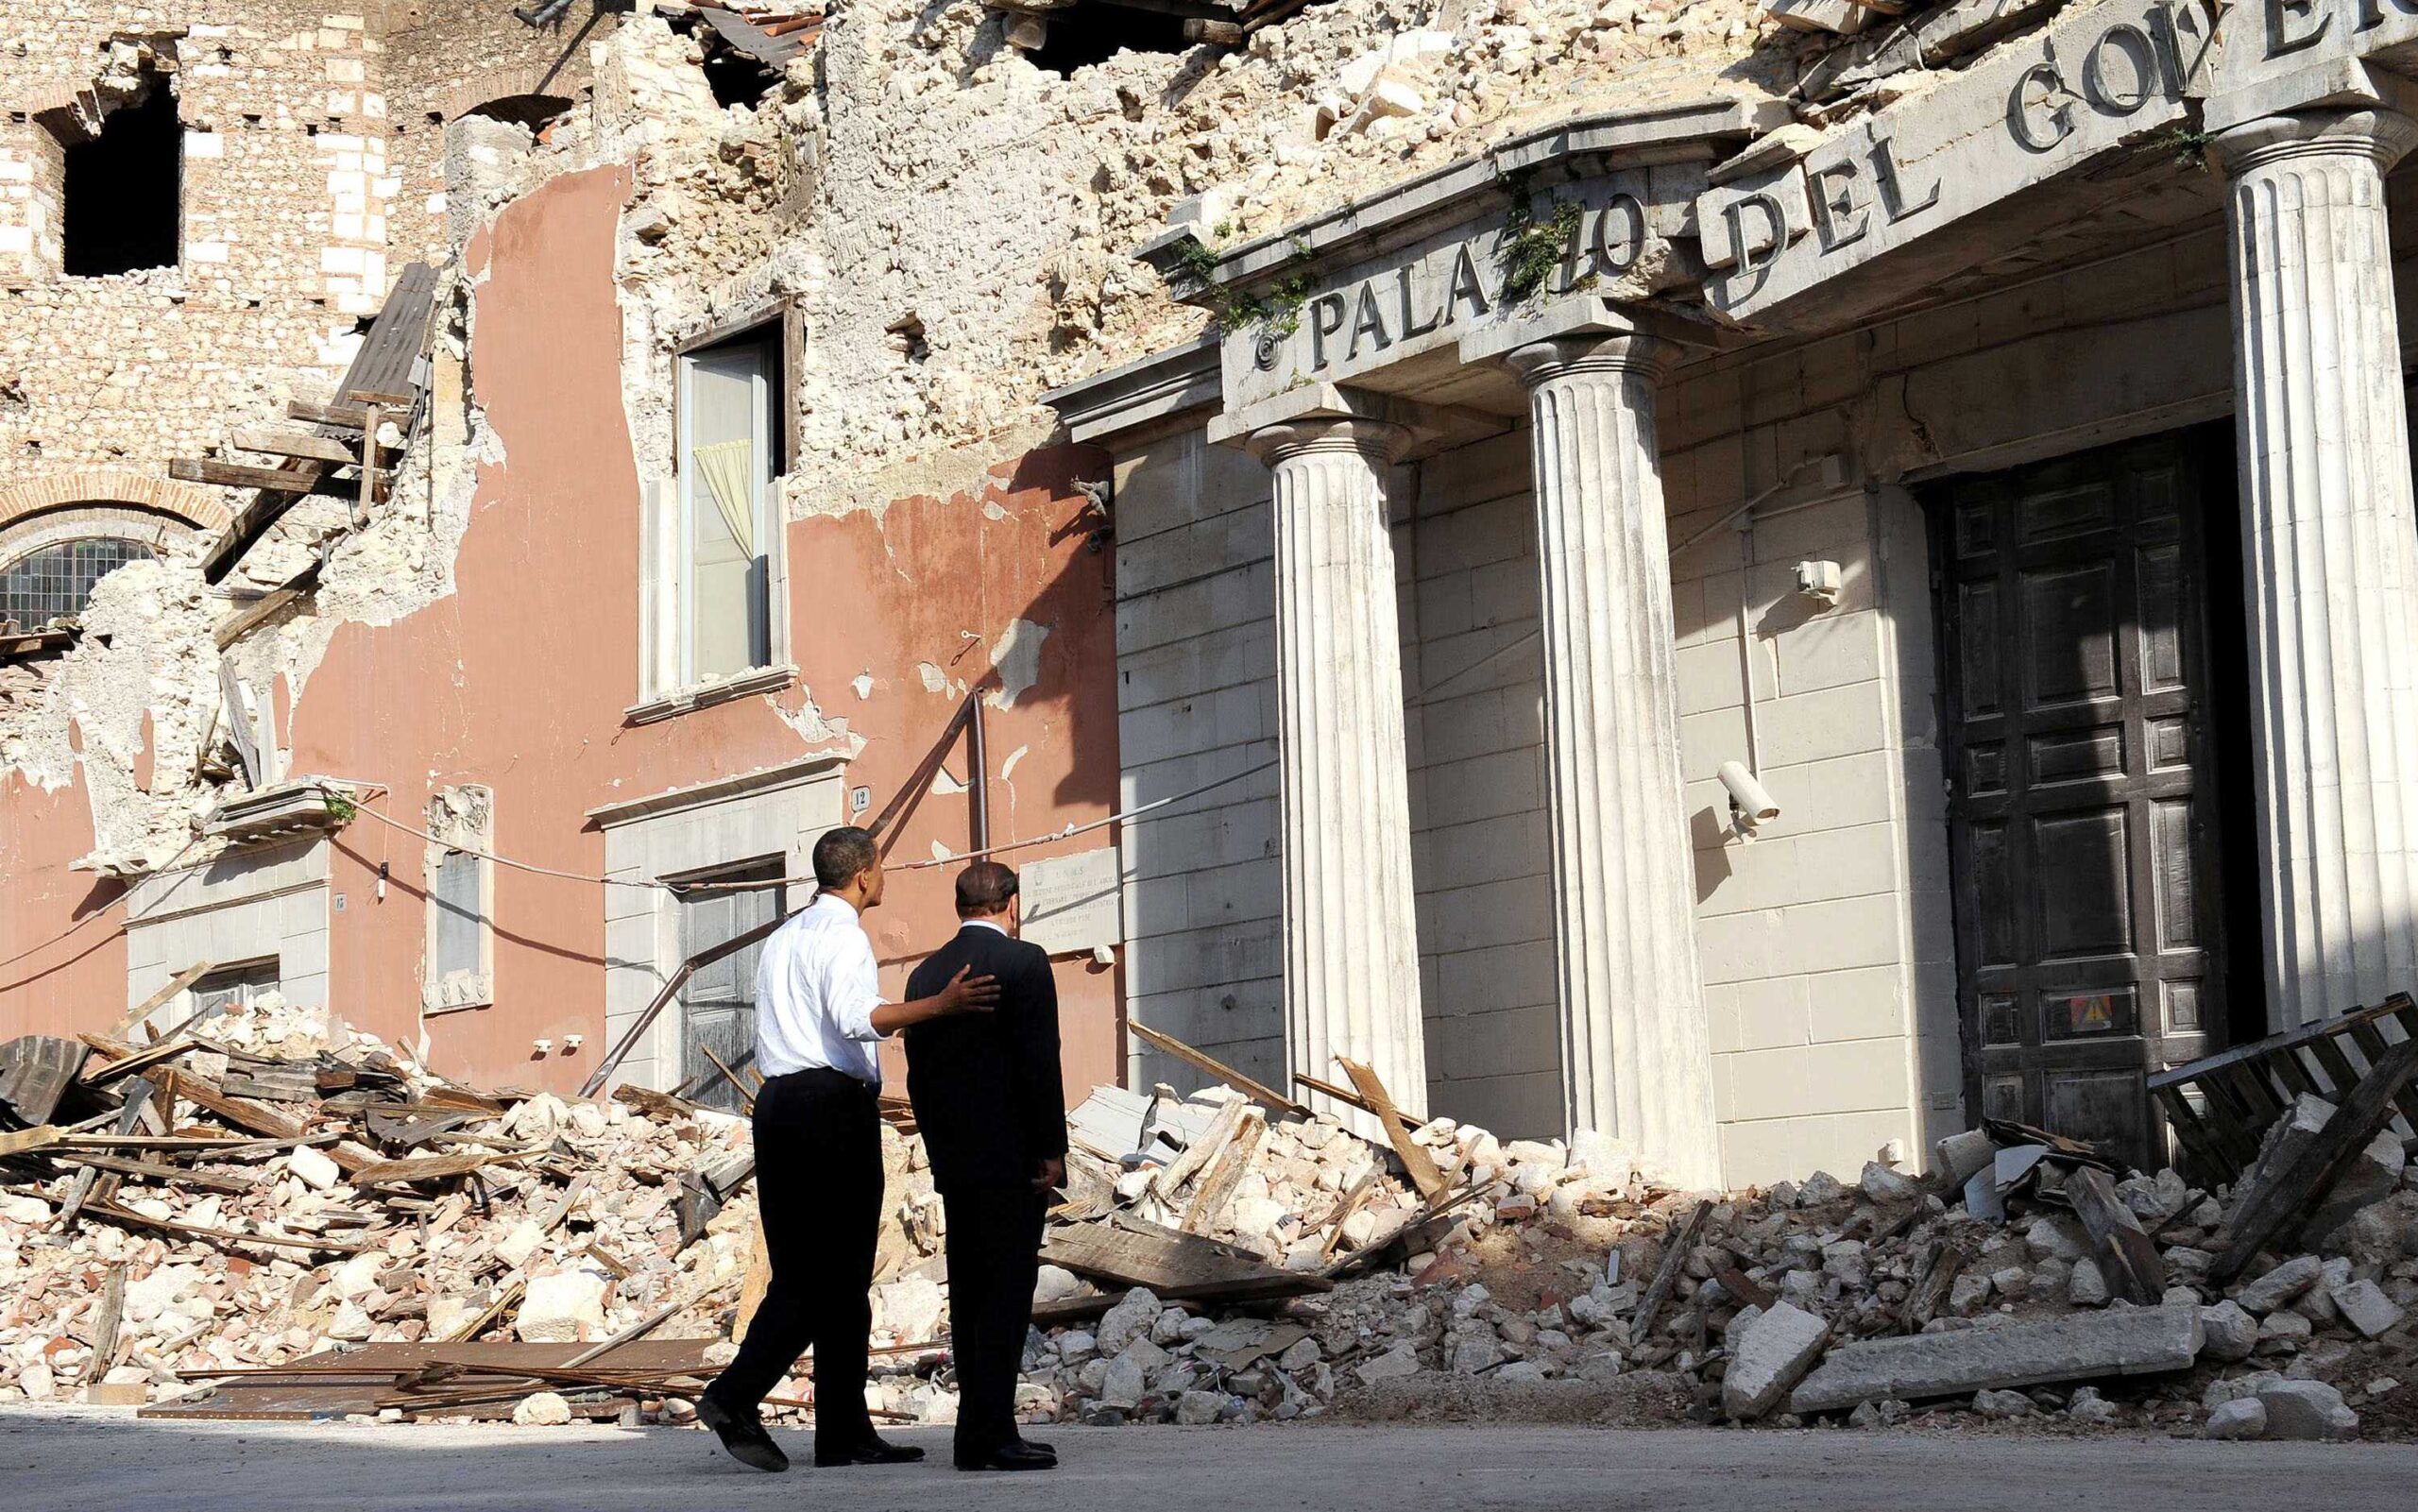 Le président américain Barack Obama et le Premier ministre italien Silvio Berlusconi regardent un bâtiment gouvernemental endommagé, détruit par un tremblement de terre en avril 2009 dans le centre ville de l'Aquila, pendant le sommet du Groupe des Huit (G8). L'Aquila, Italie, le 8 juillet 2009. © BRAMBATTI/CHINE NOUVELLE/SIPA